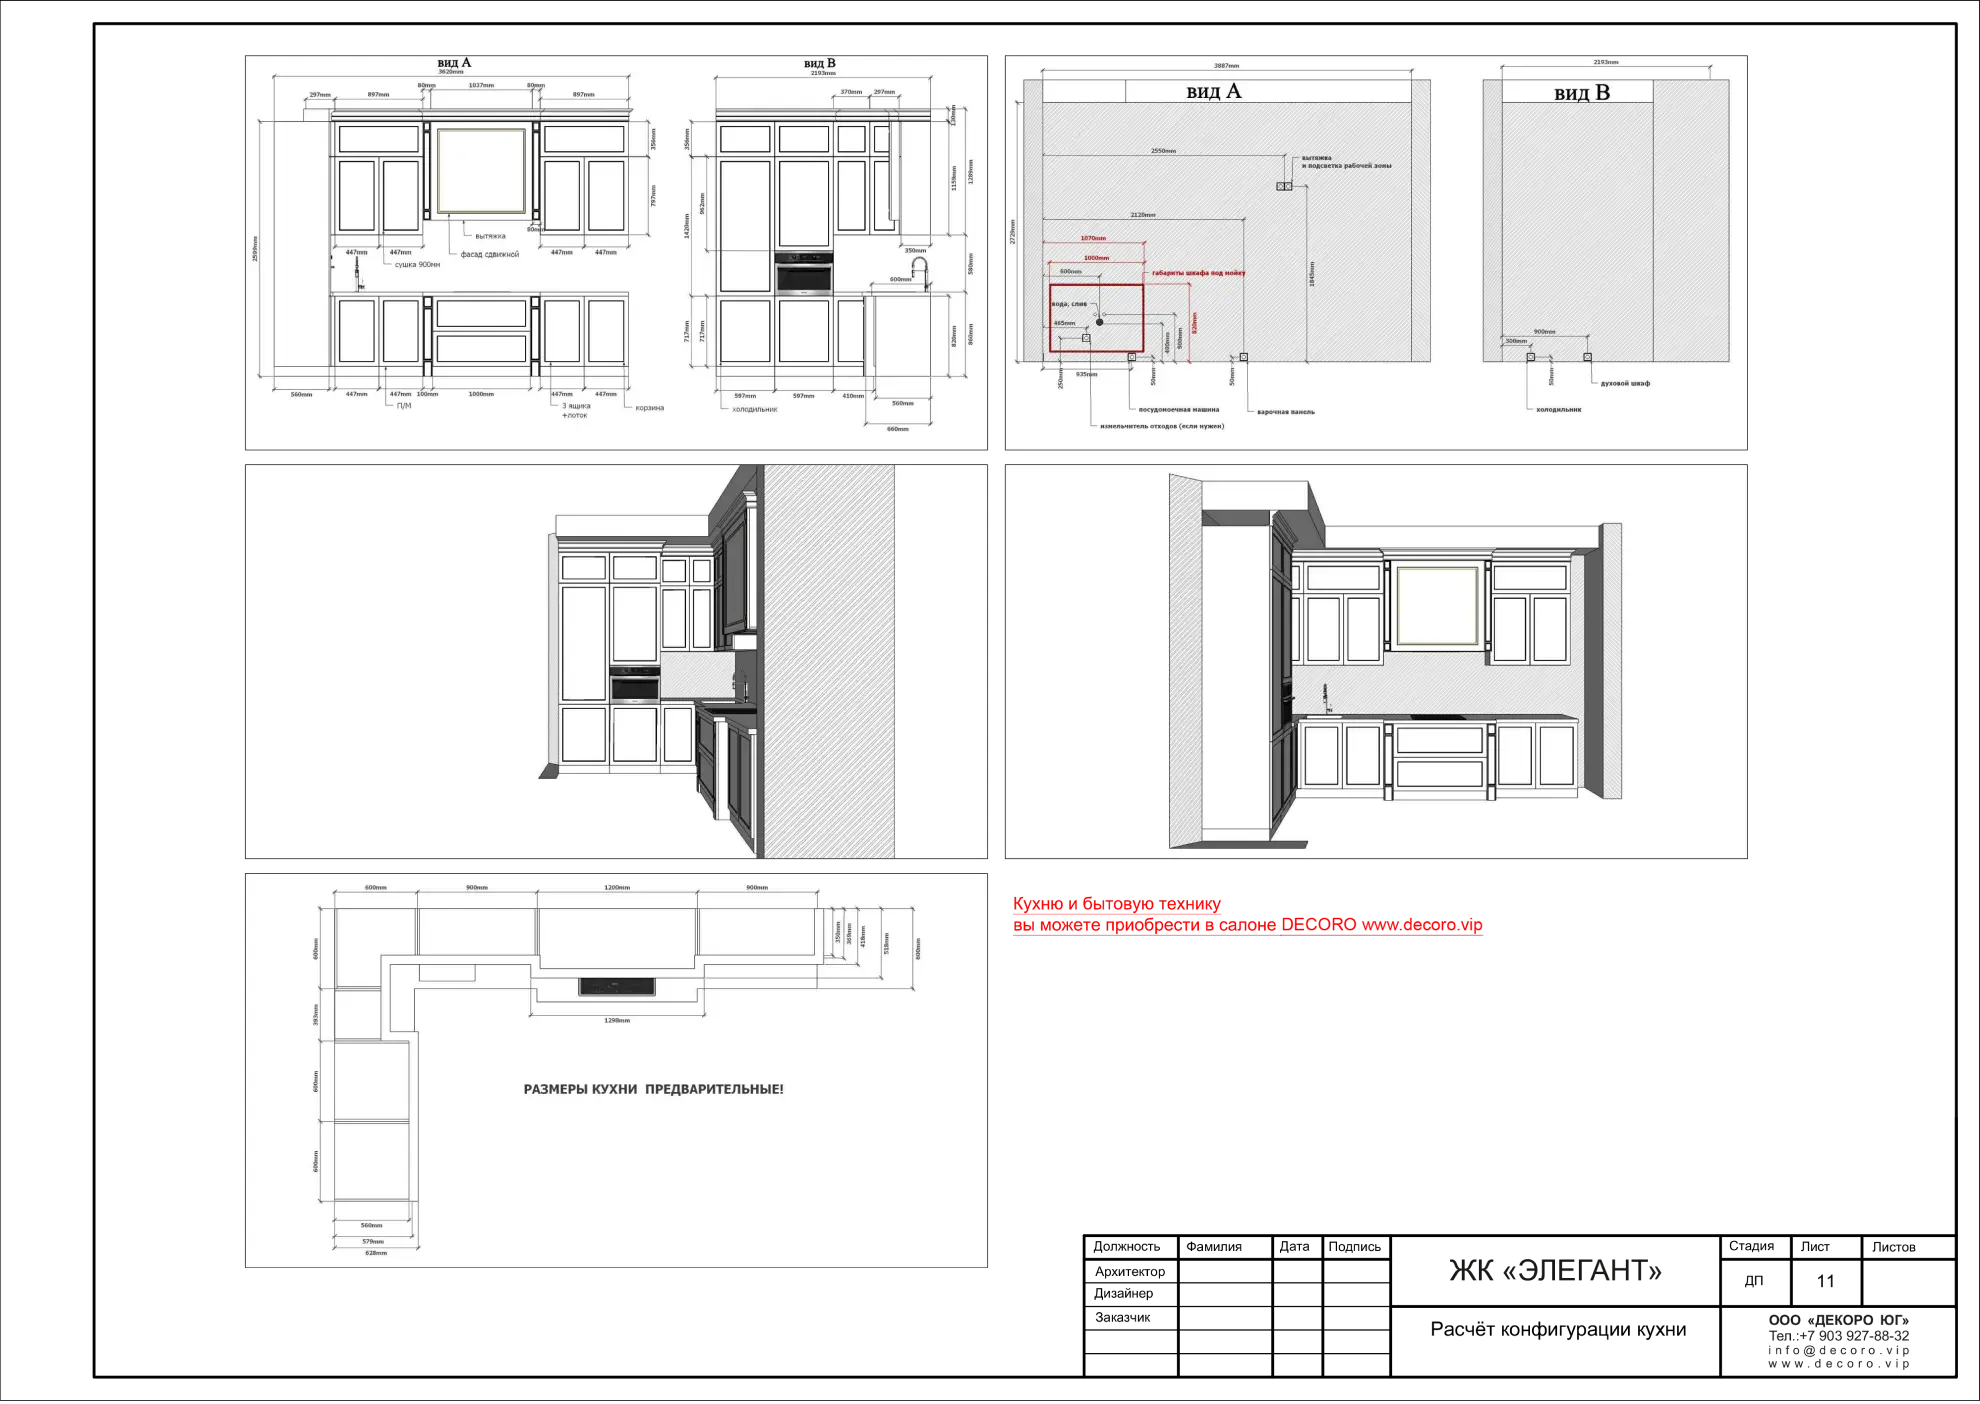 Расчет конфигурации кухни - состав дизайн проекта интерьера